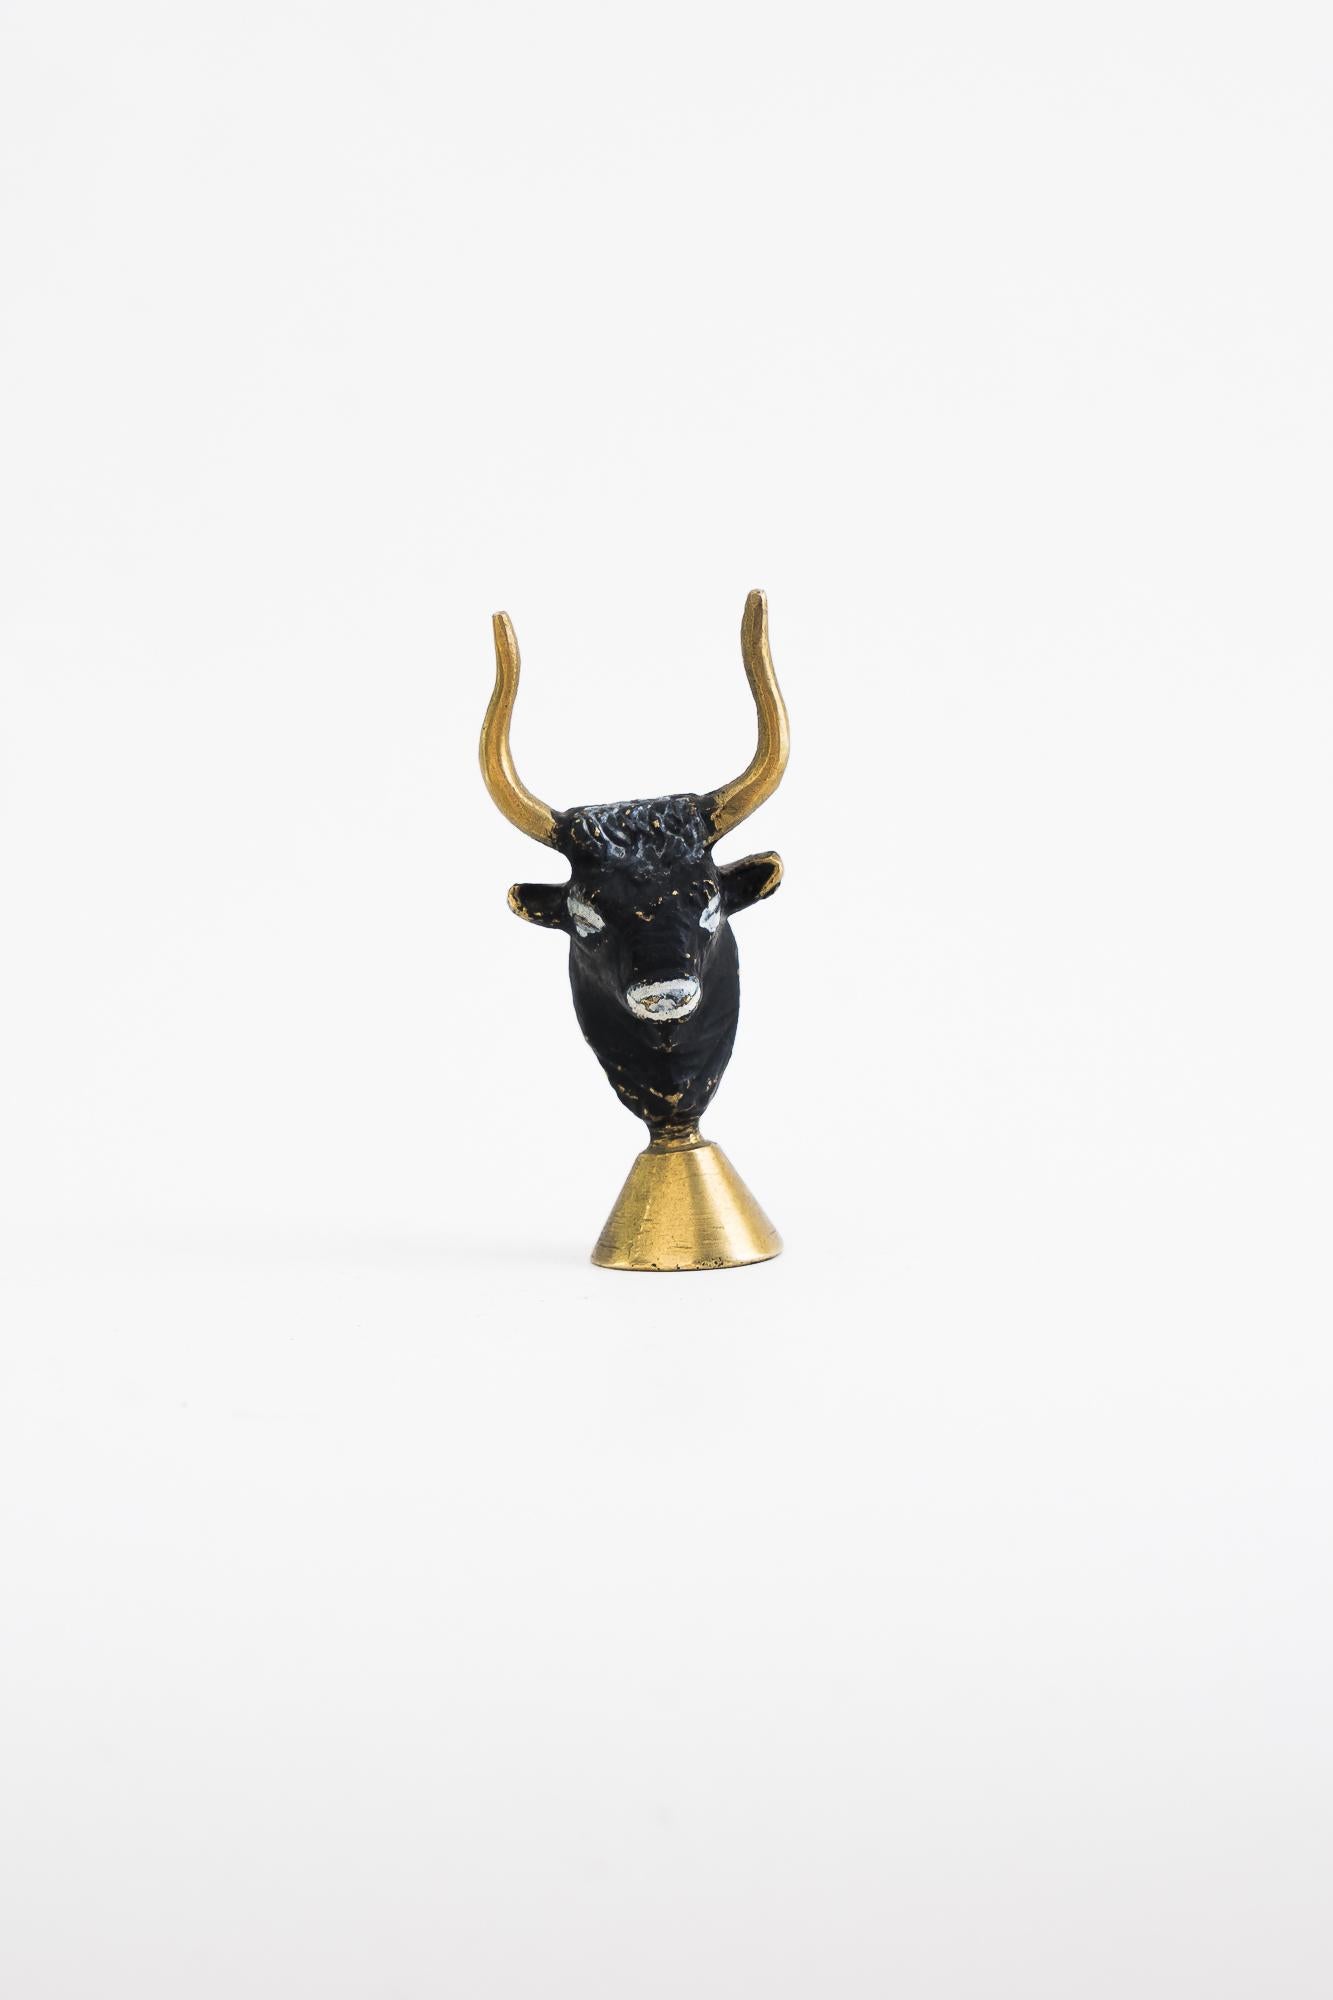 Figurine de tête de taureau par Walter Bosse vienne vers les années 1950
État original.